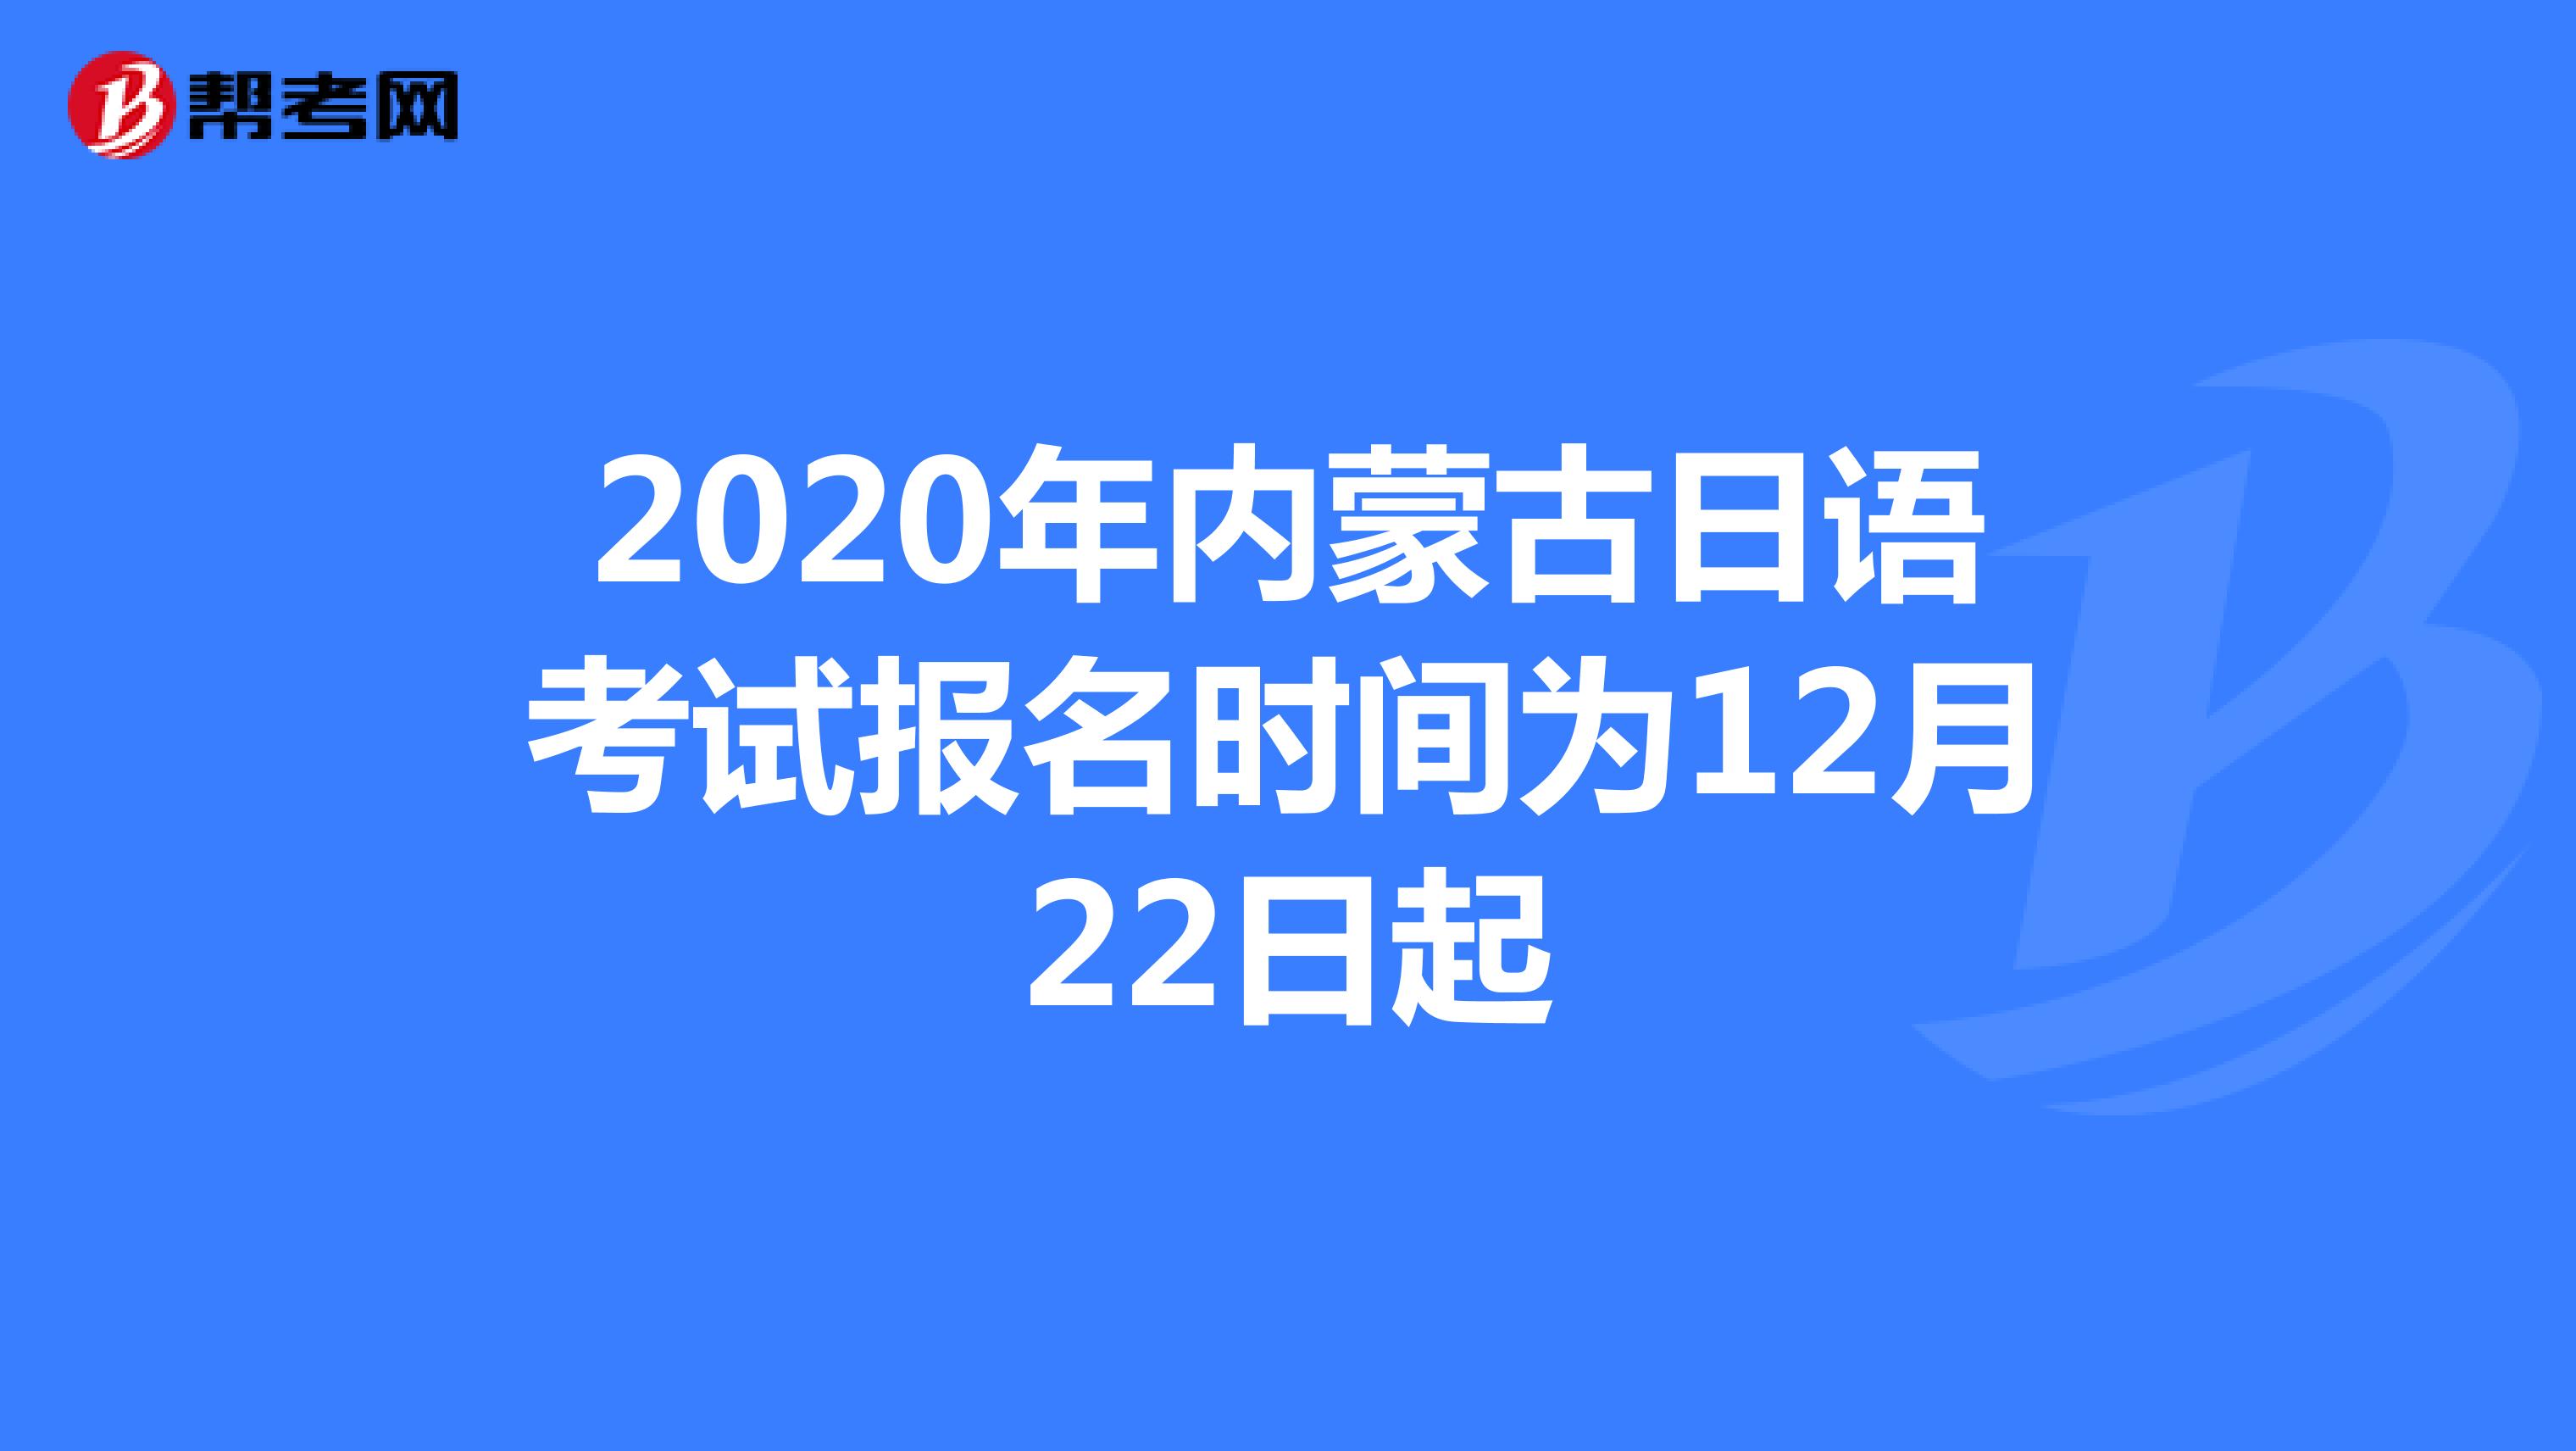 2020年内蒙古日语考试报名时间为12月22日起